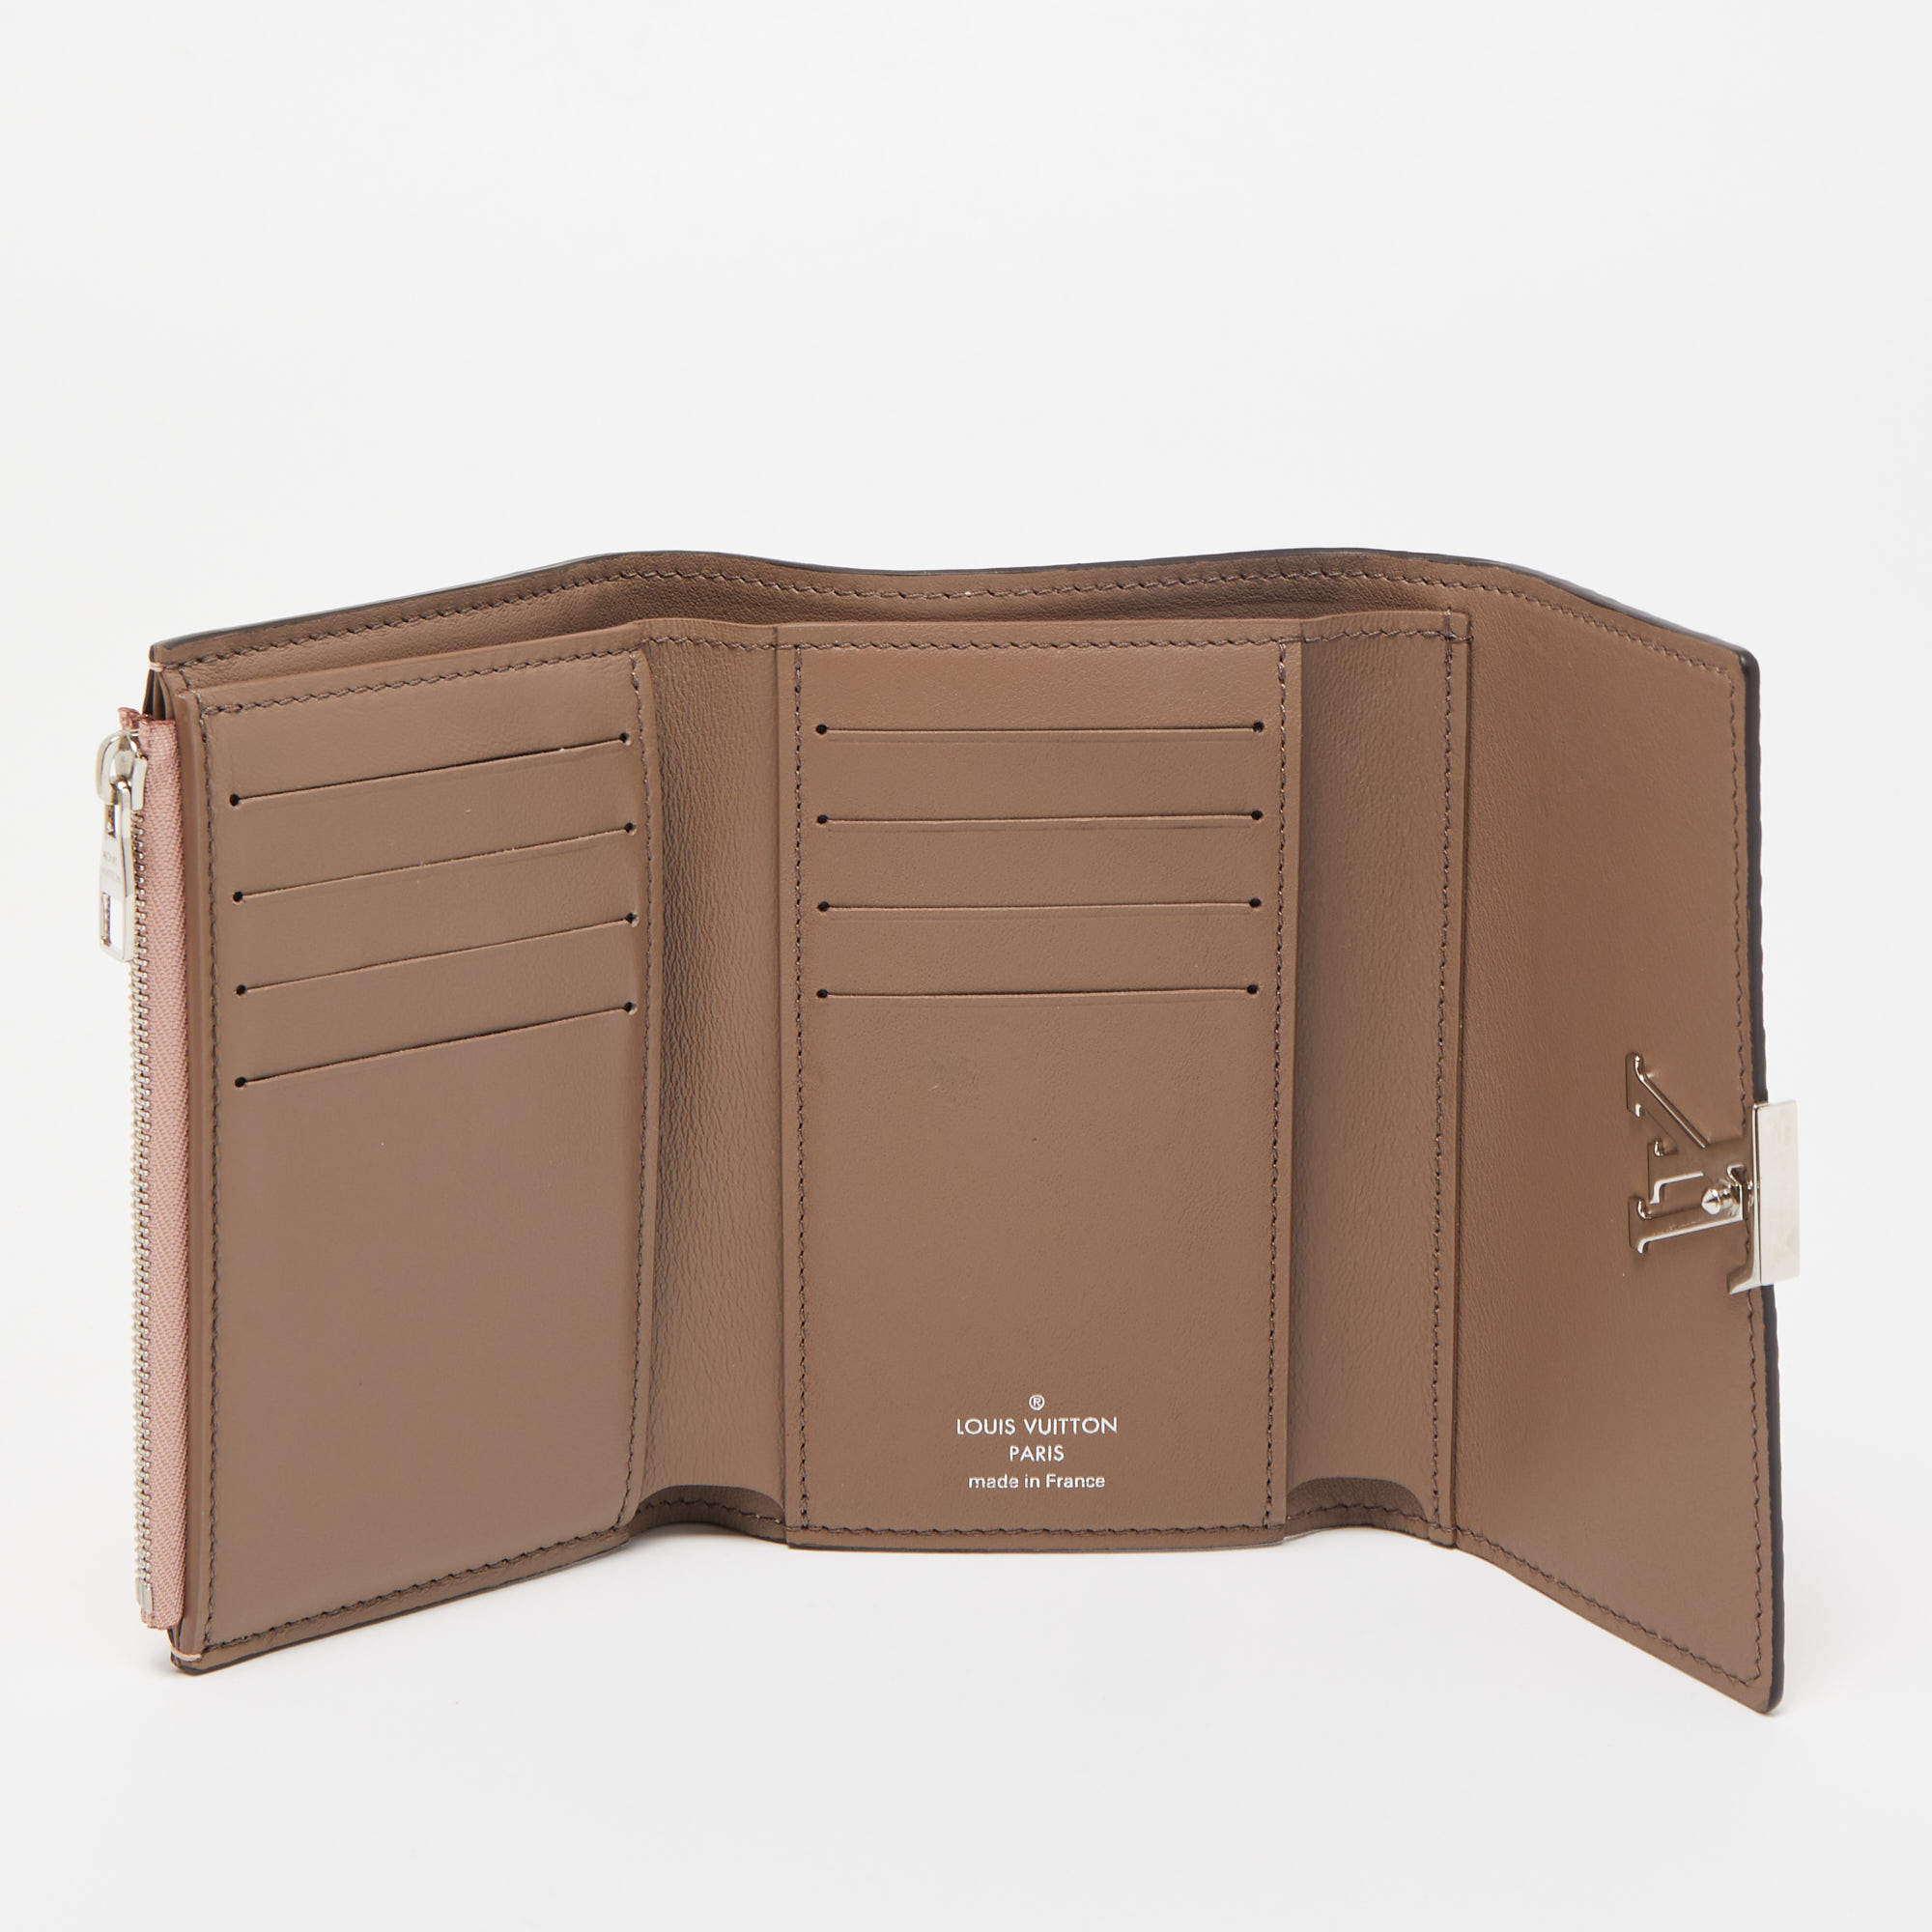 LOUIS VUITTON Capucines Taurillon Compact Leather Wallet Magnolia - La